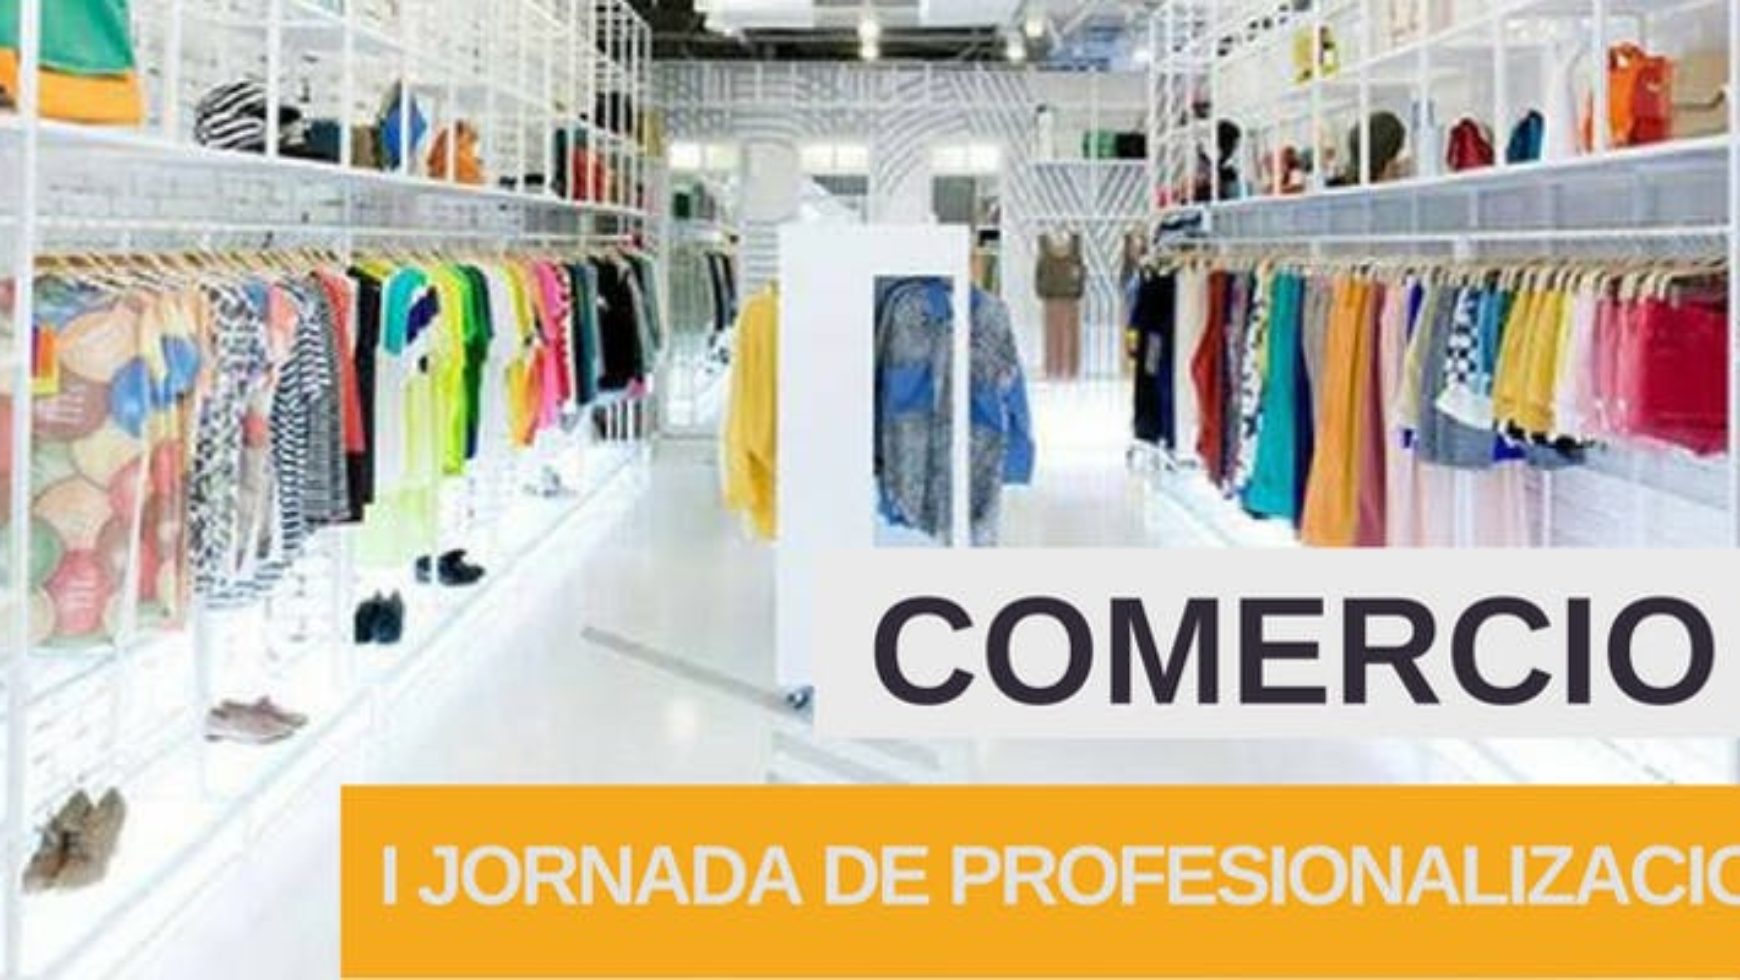 I. Jornada de Comercio Retail. Jon Pera